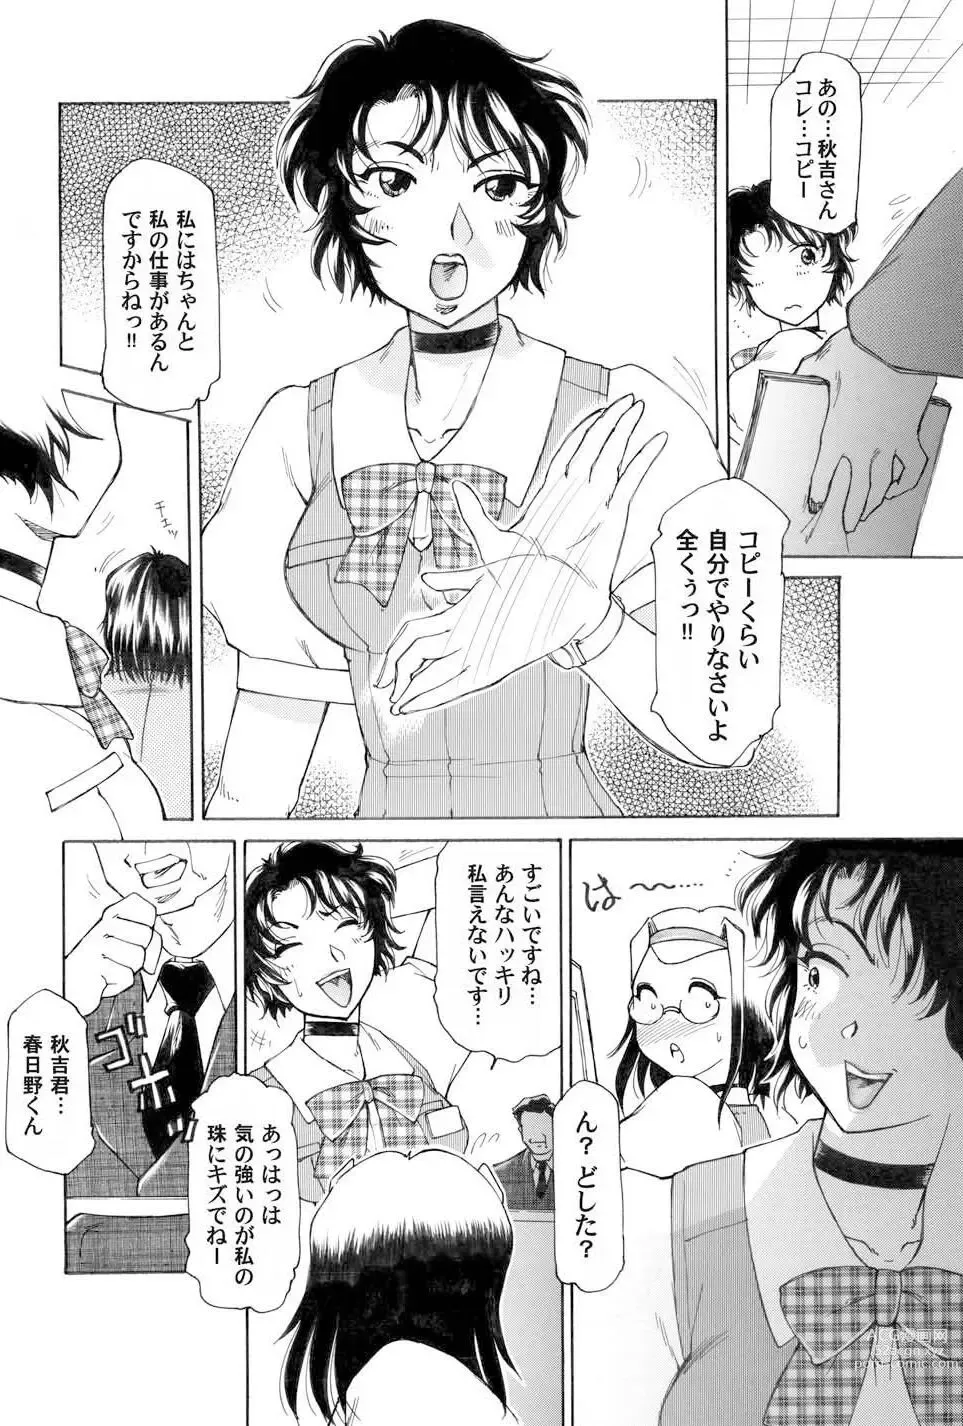 Page 4 of manga Kochira Soumubu Niku Houshika